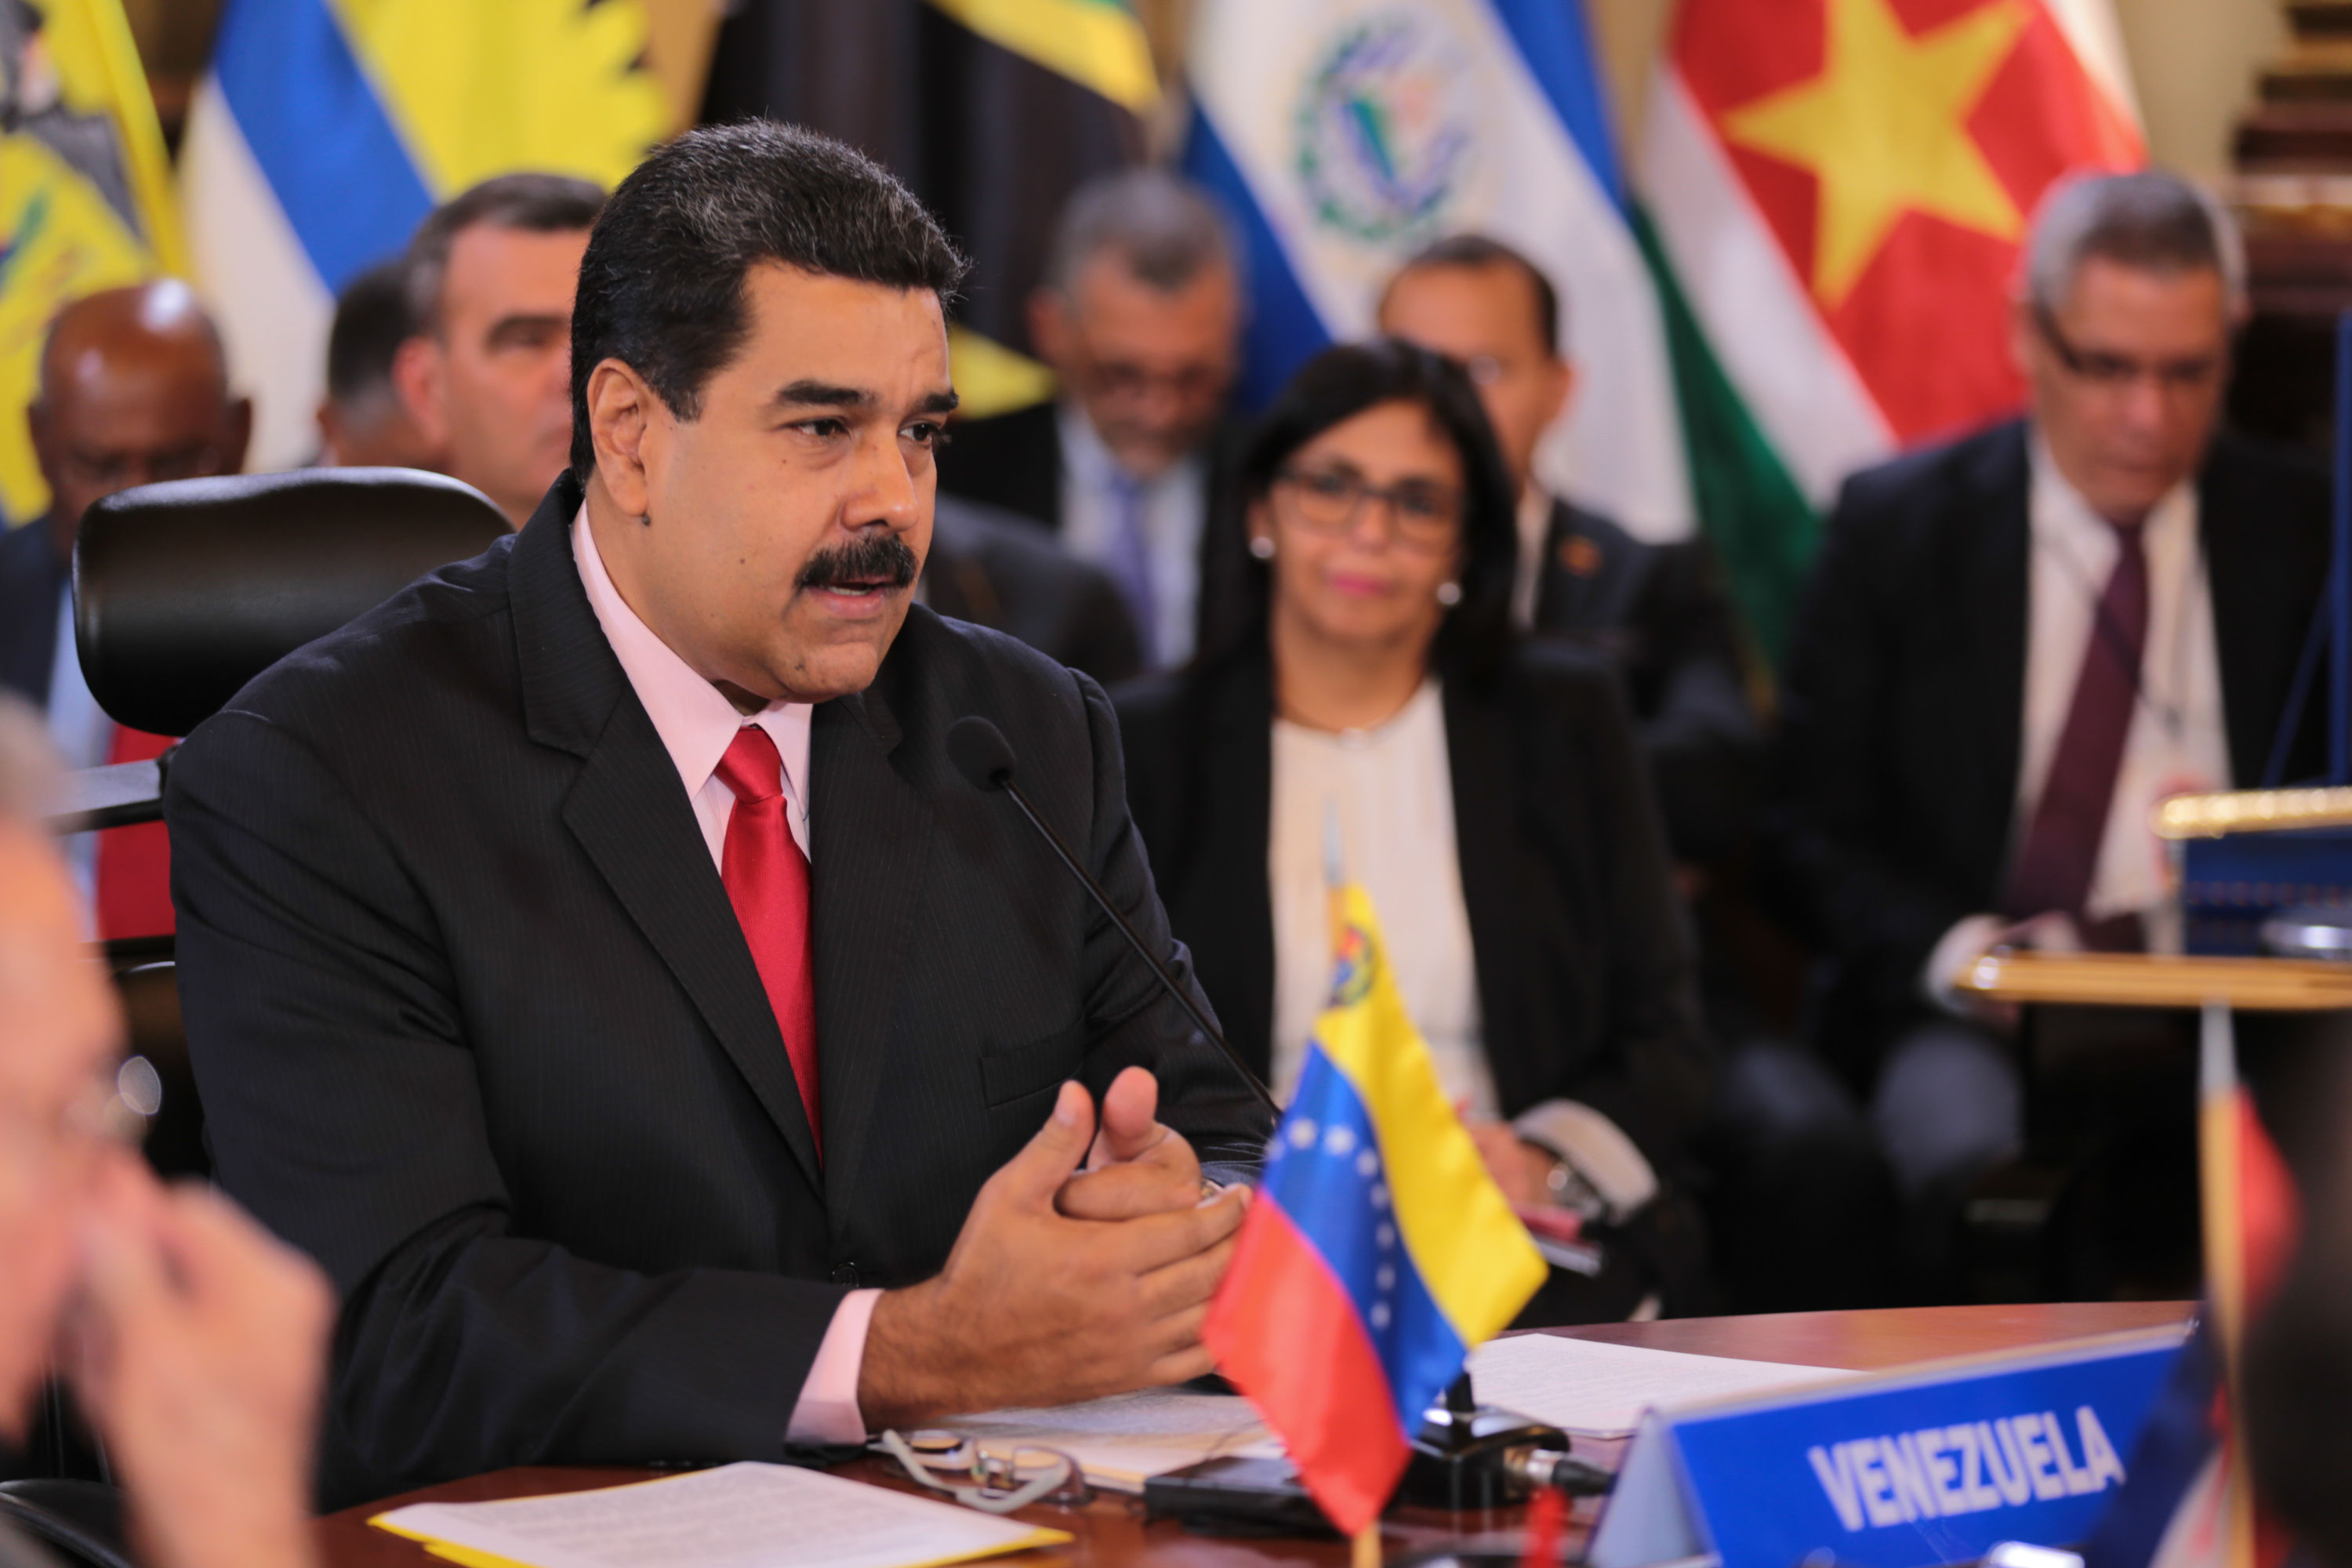 El secretario general de la OEA, Luis Almagro, llamó a elecciones generales en 30 días mientras el presidente Maduro aseguró que Venezuela no aceptará amenazas.